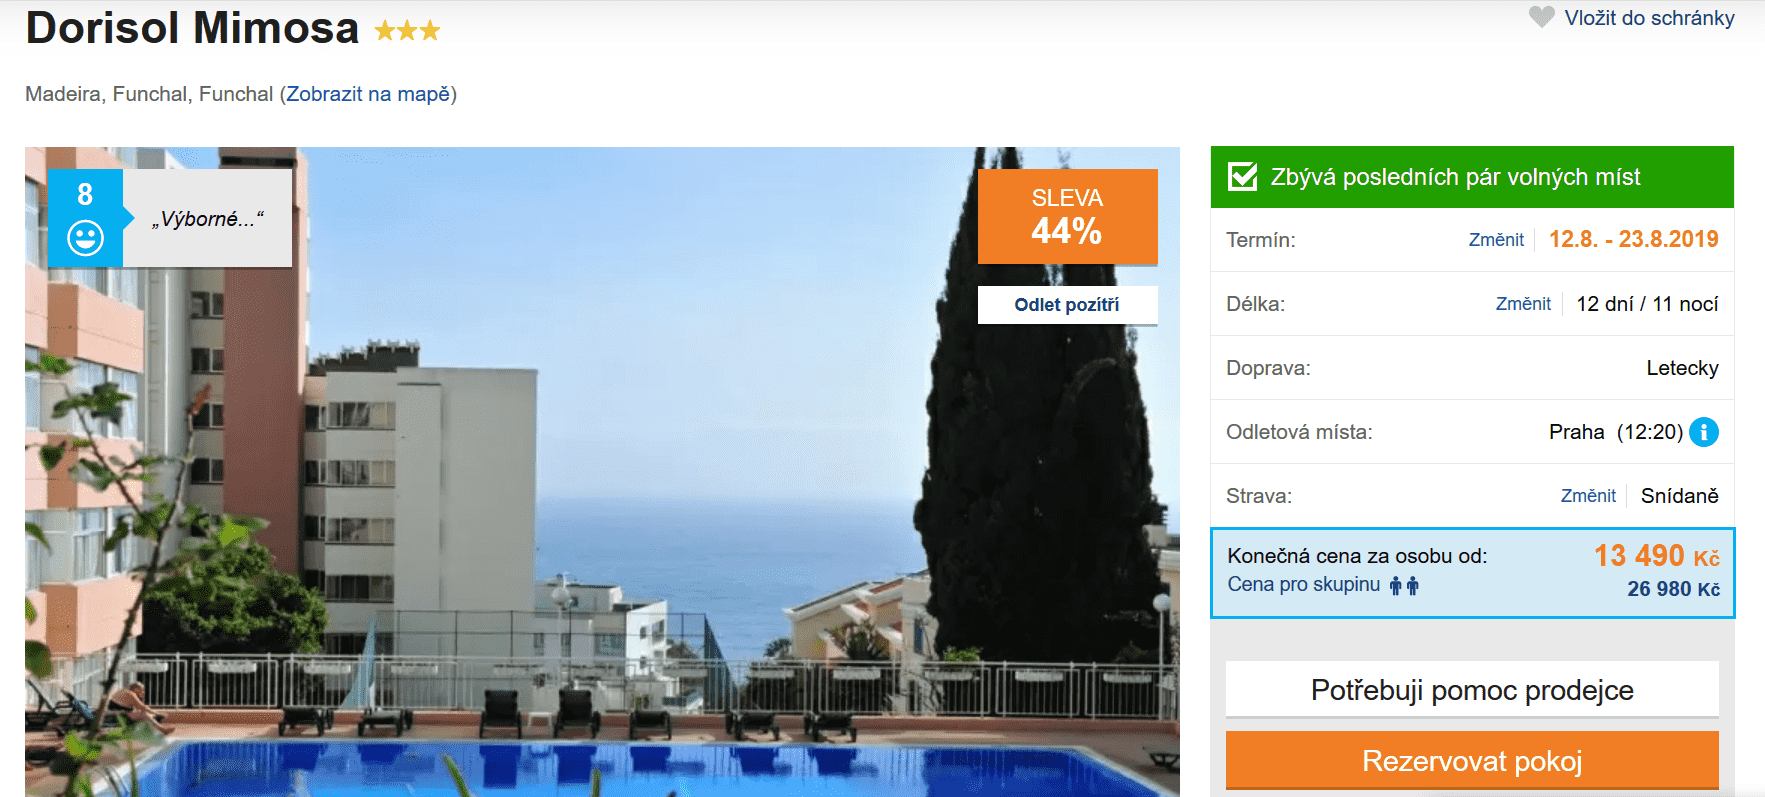 Zájezd Madeira (hotel Dorisol Mimosa)